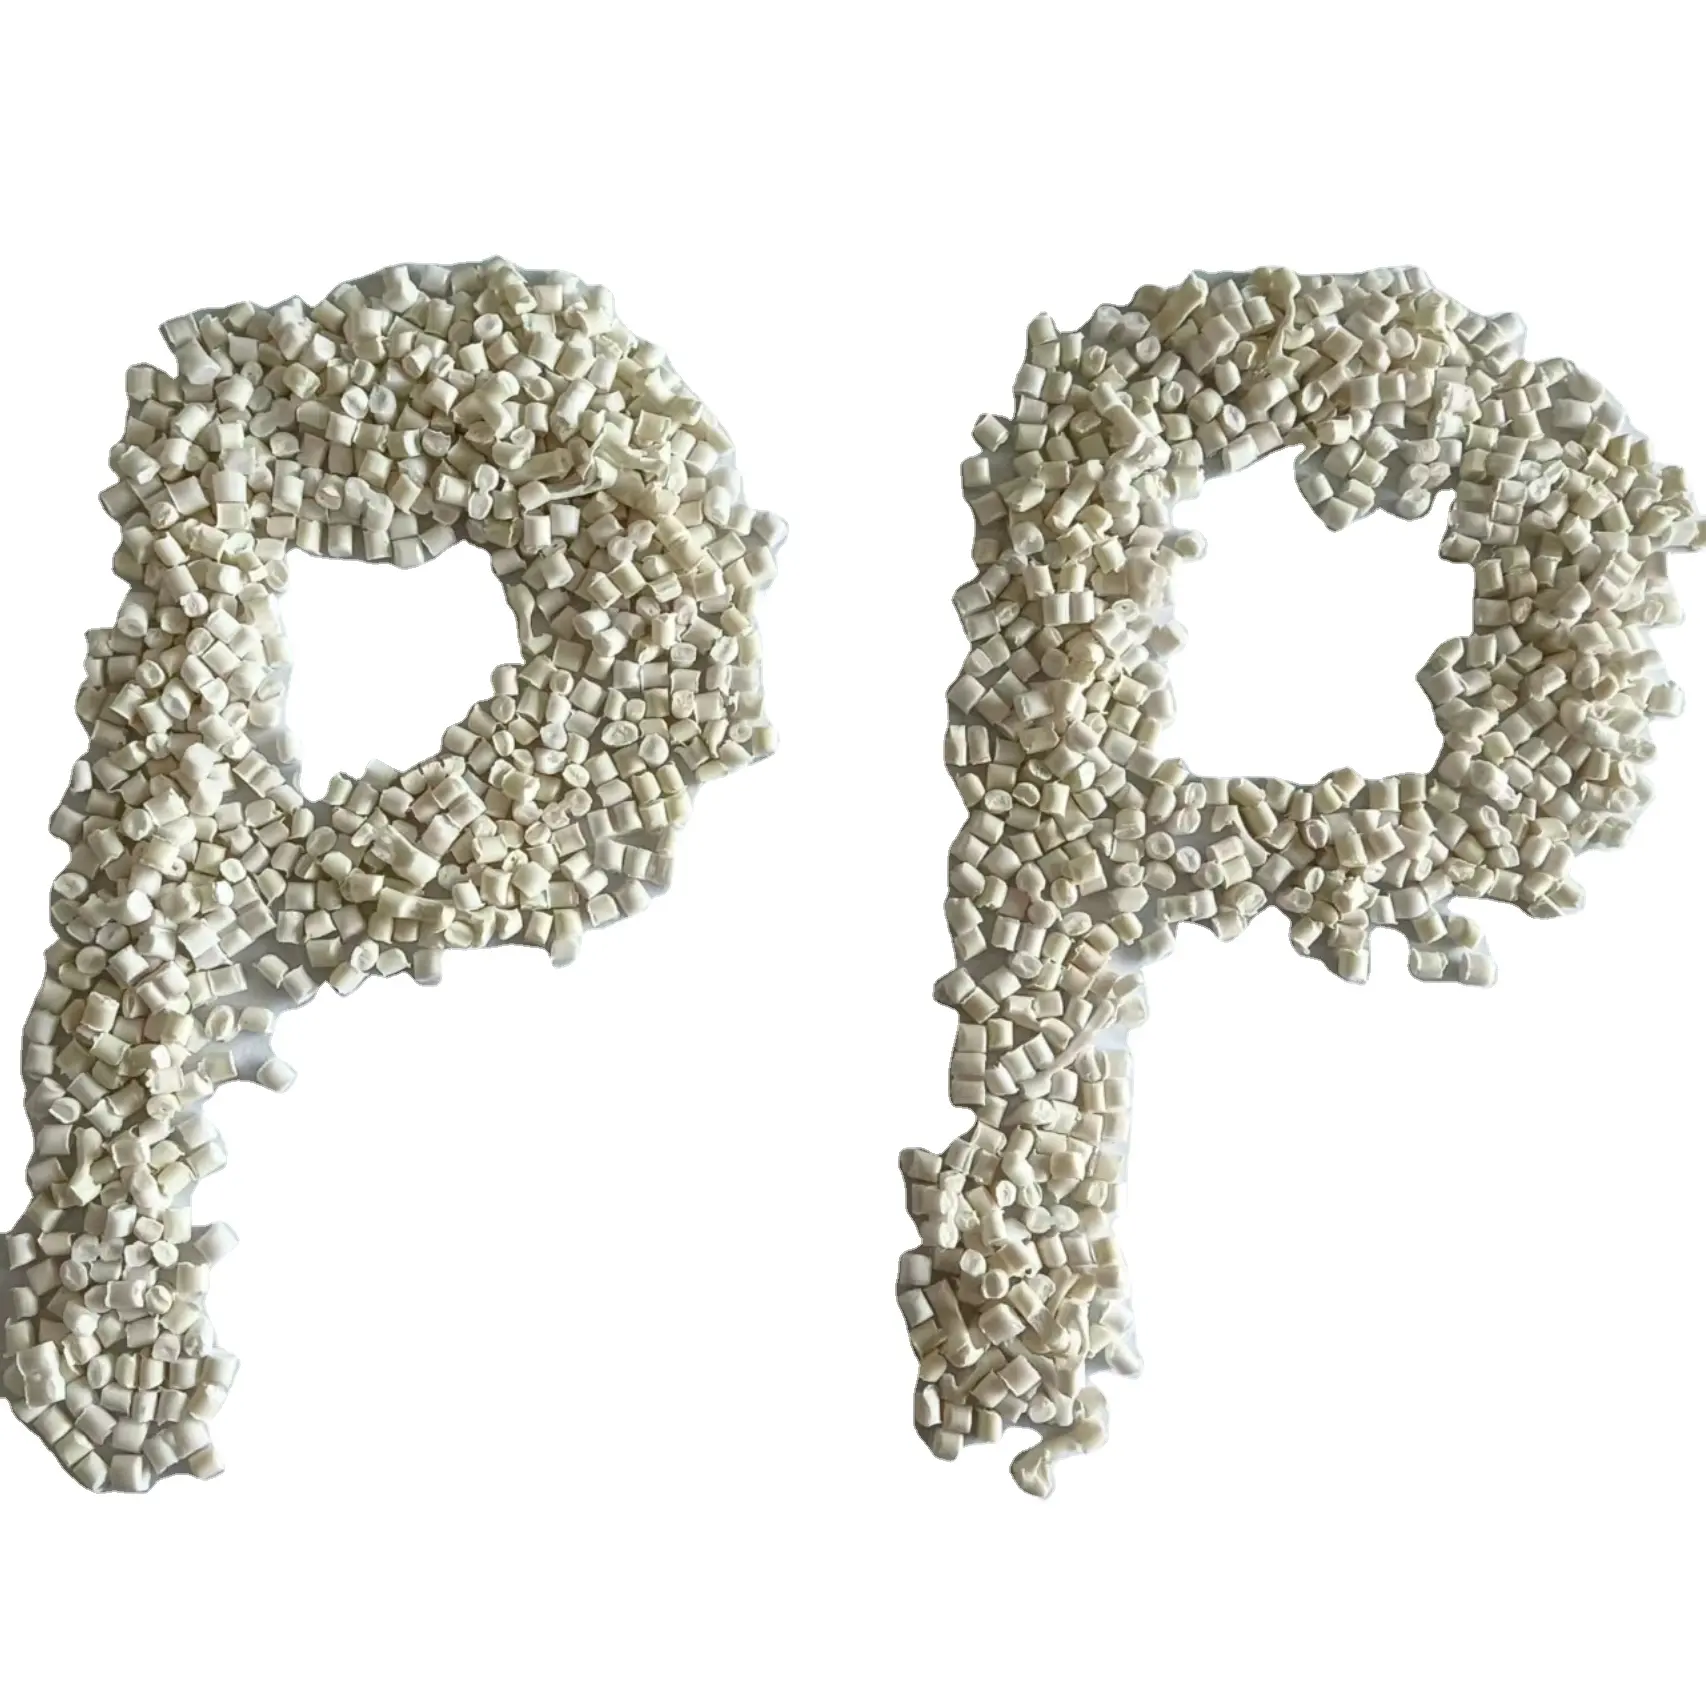 저렴한 가격의 재활용 플라스틱 흰색 pp 과립 원료 플라스틱 소재 폴리 폴리 프로필렌 PP 재료 Pp 플라스틱